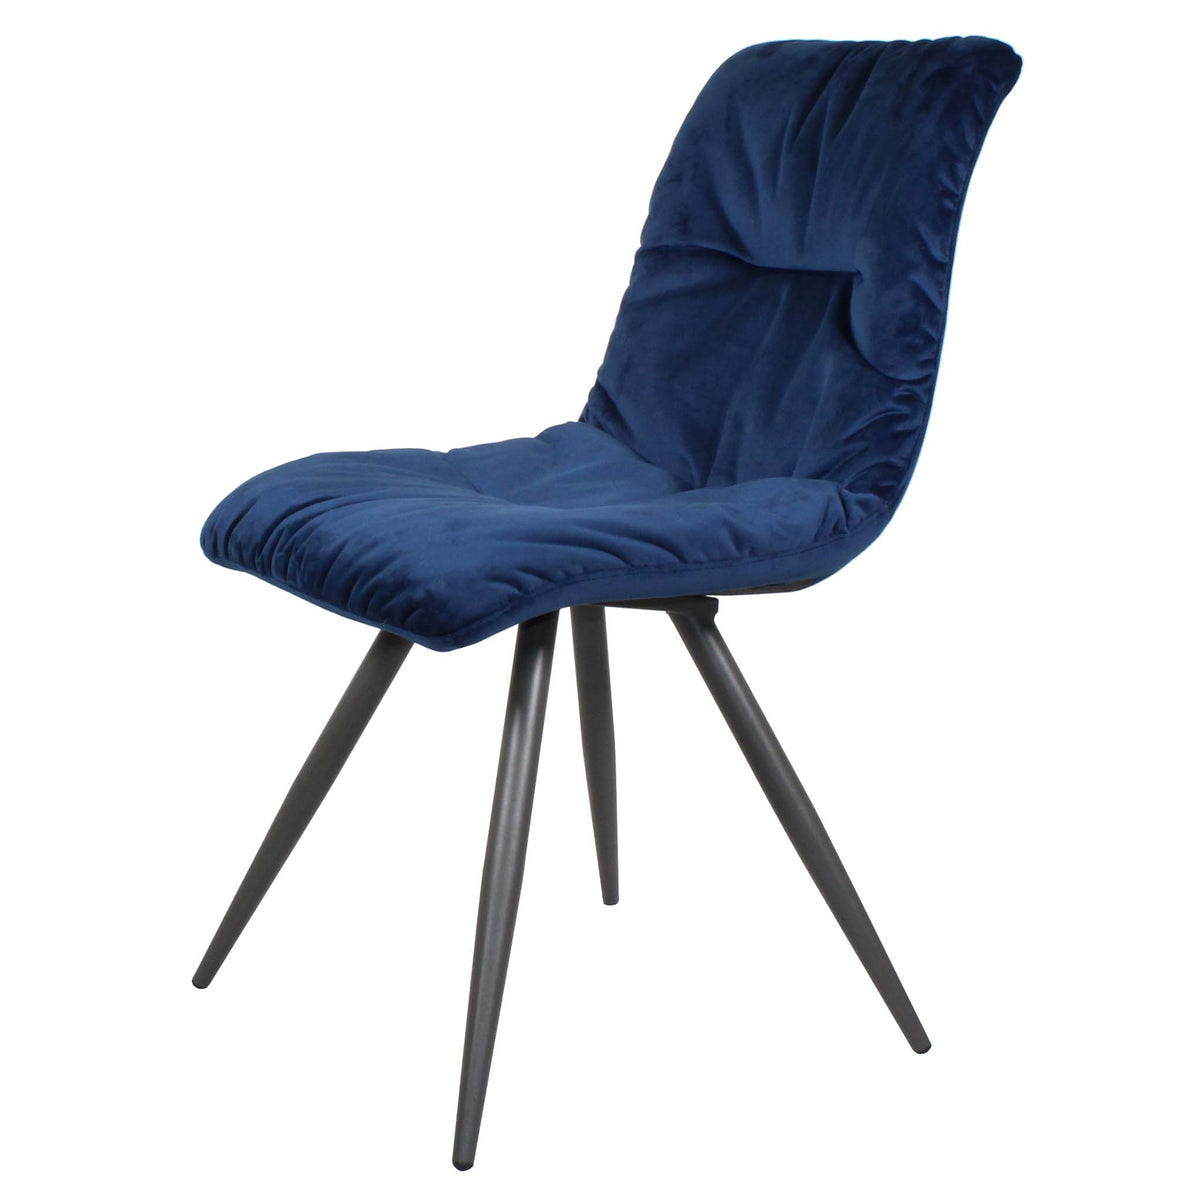 Addison Blue Chair